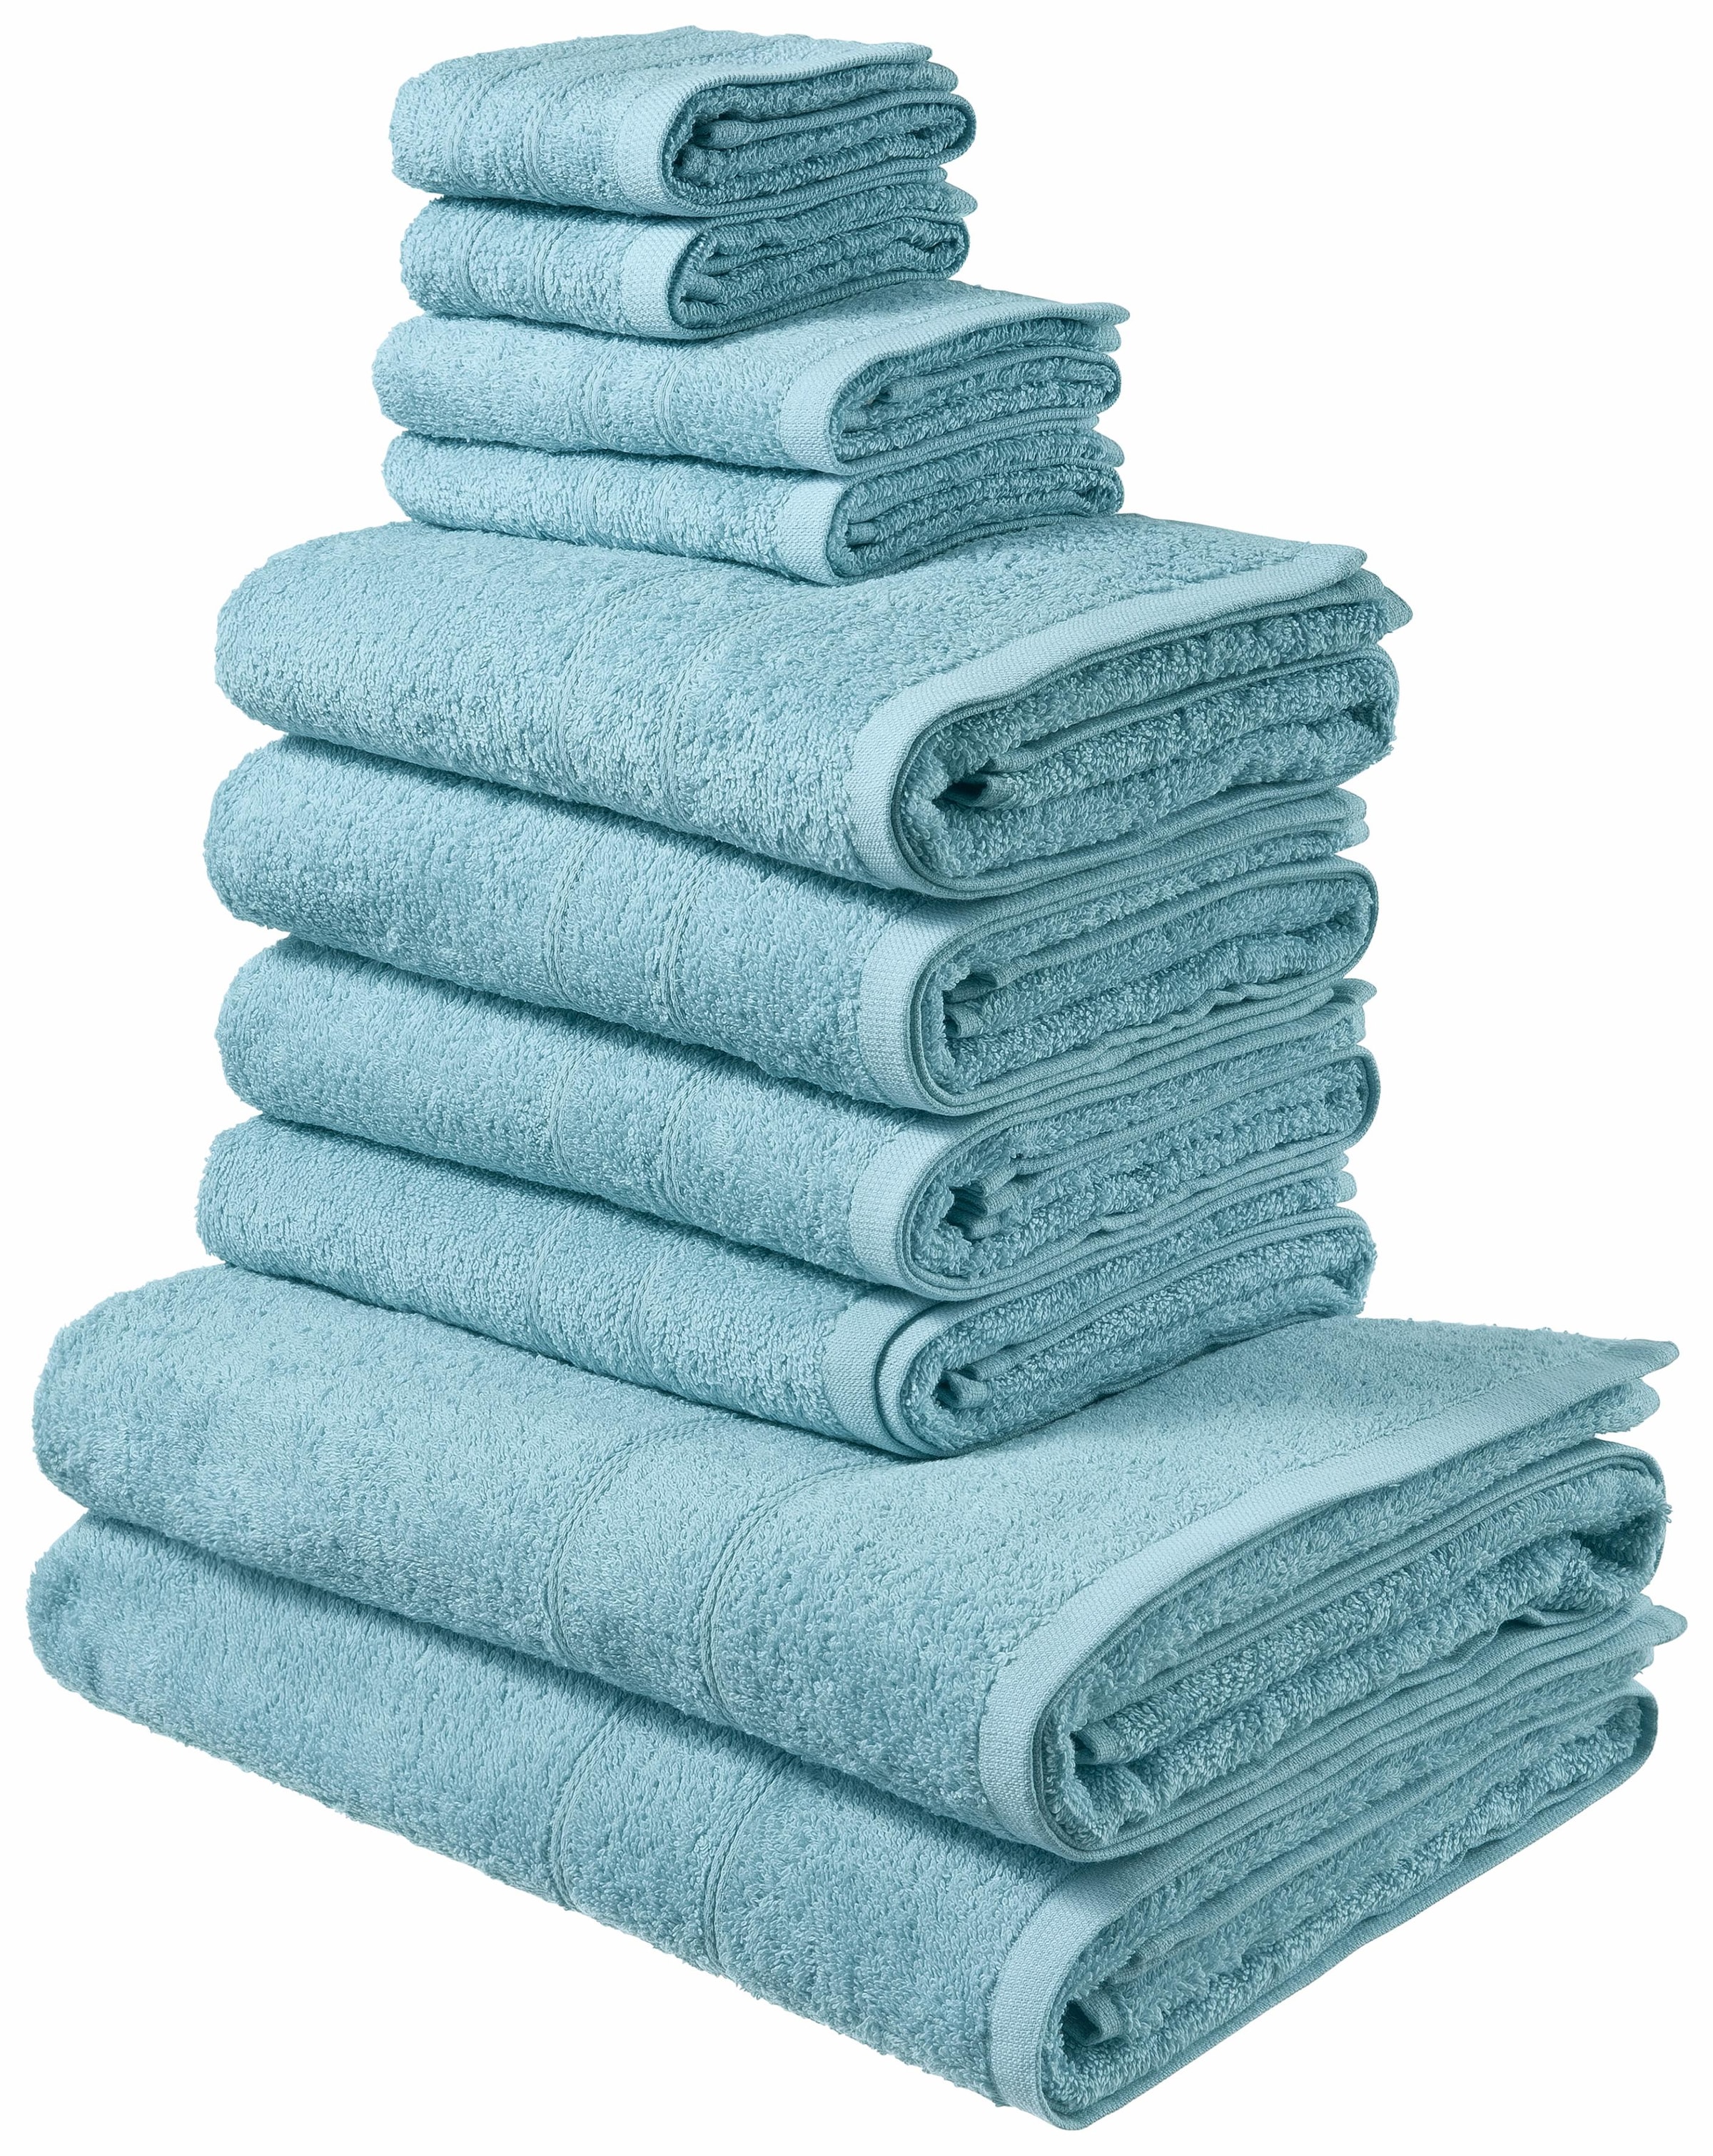 Handtücher in Blau bestellen Raten auf